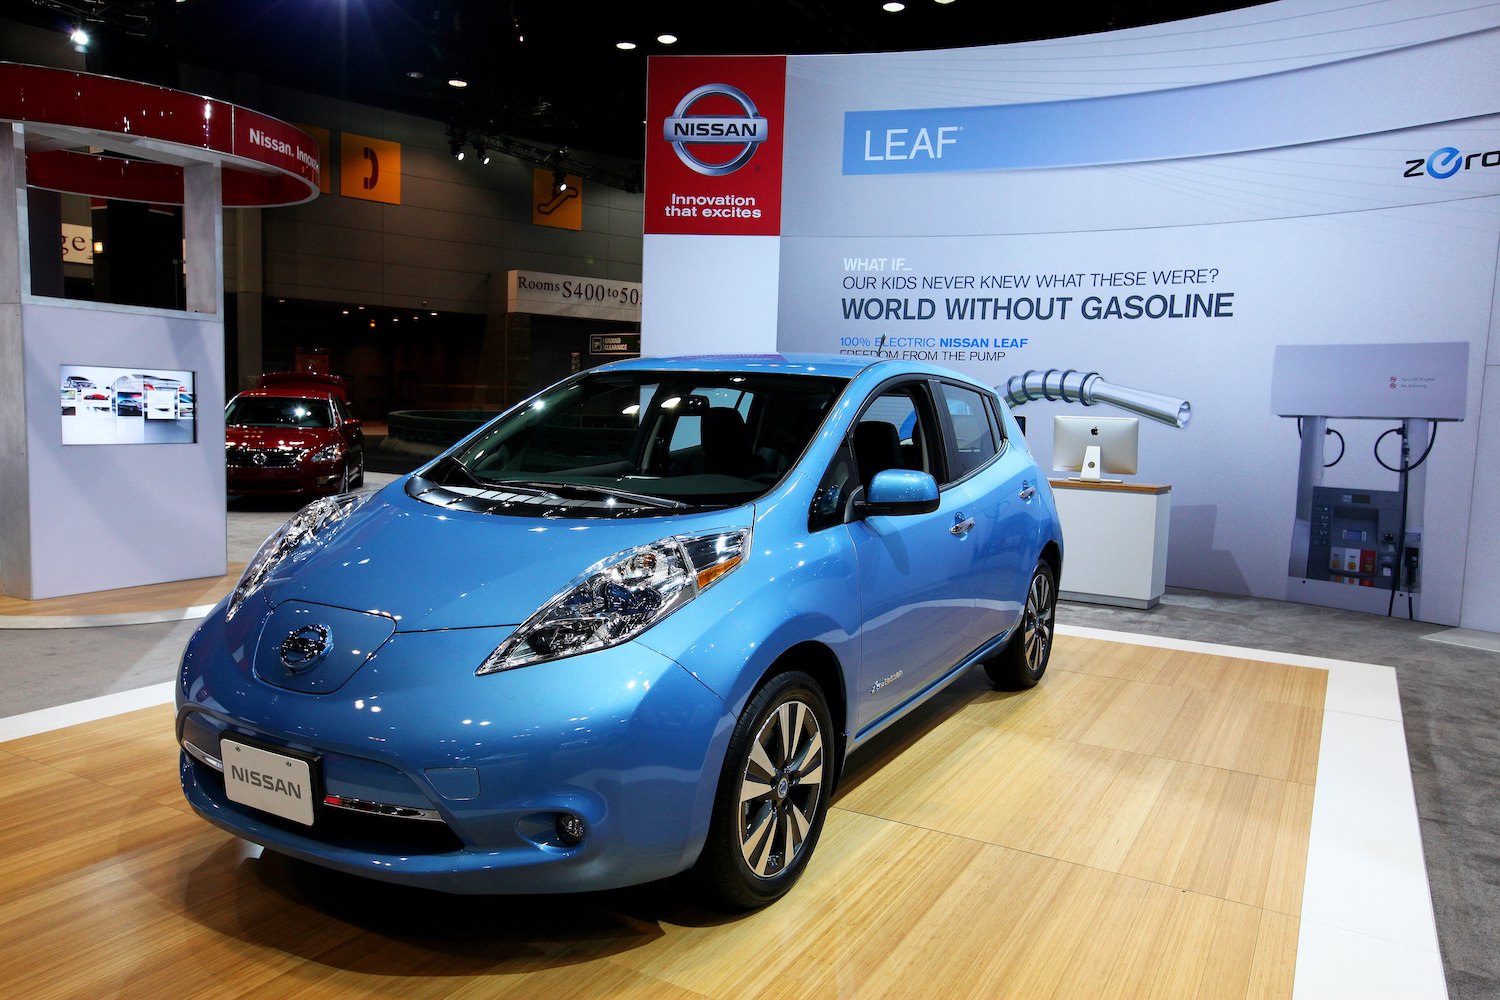 A first-generation Nissan Leaf